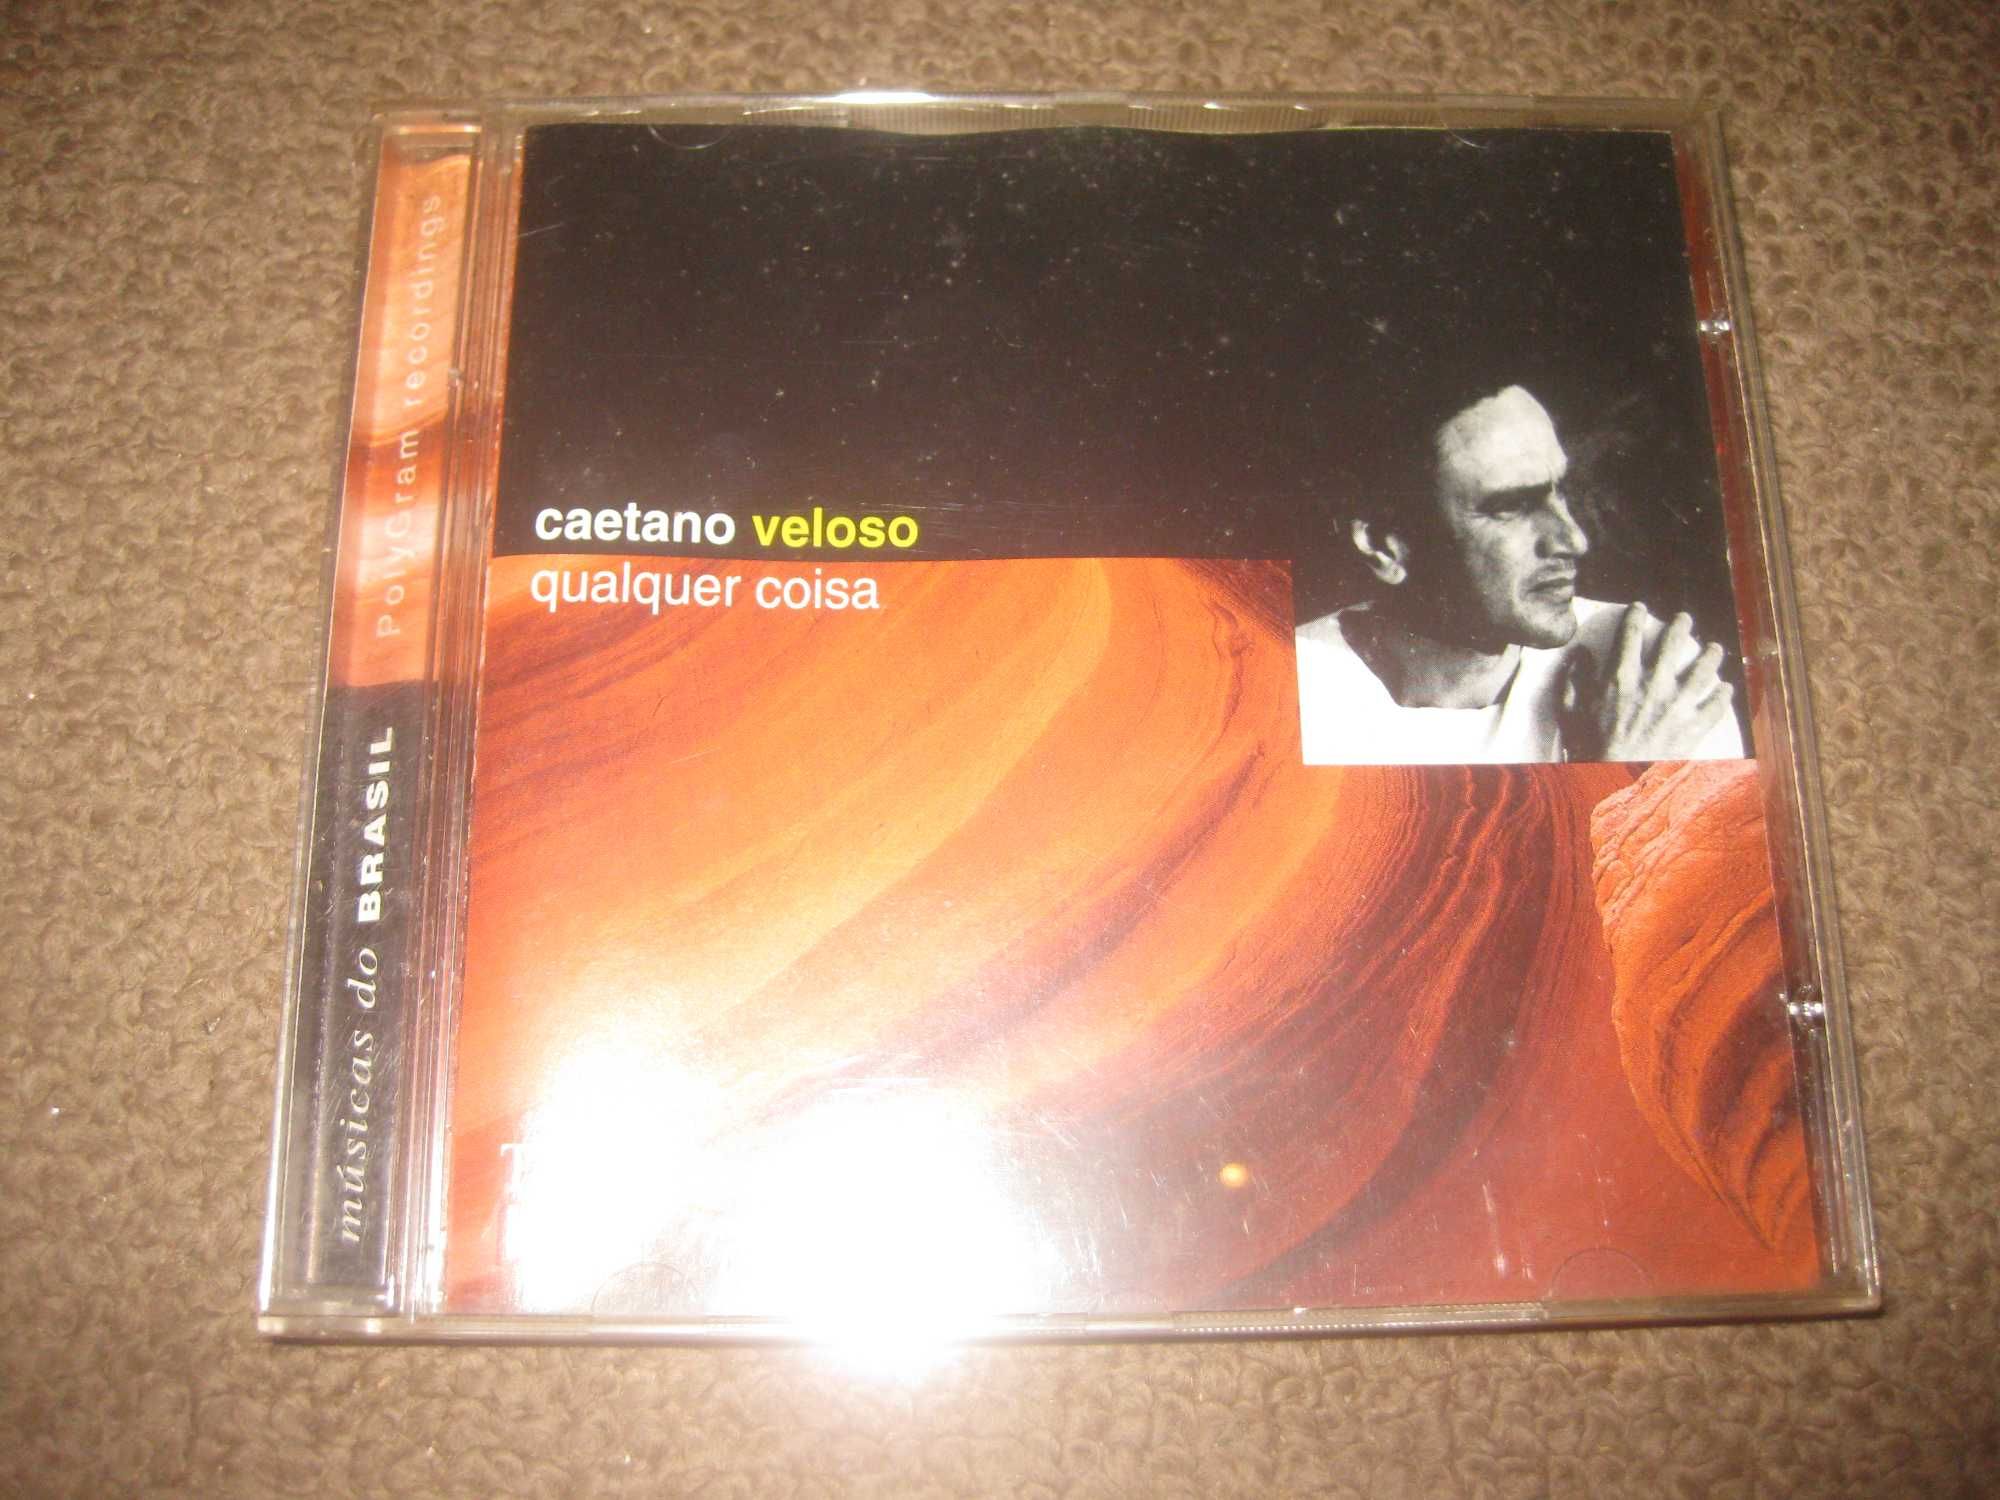 CD do Caetano Veloso "Qualquer Coisa"